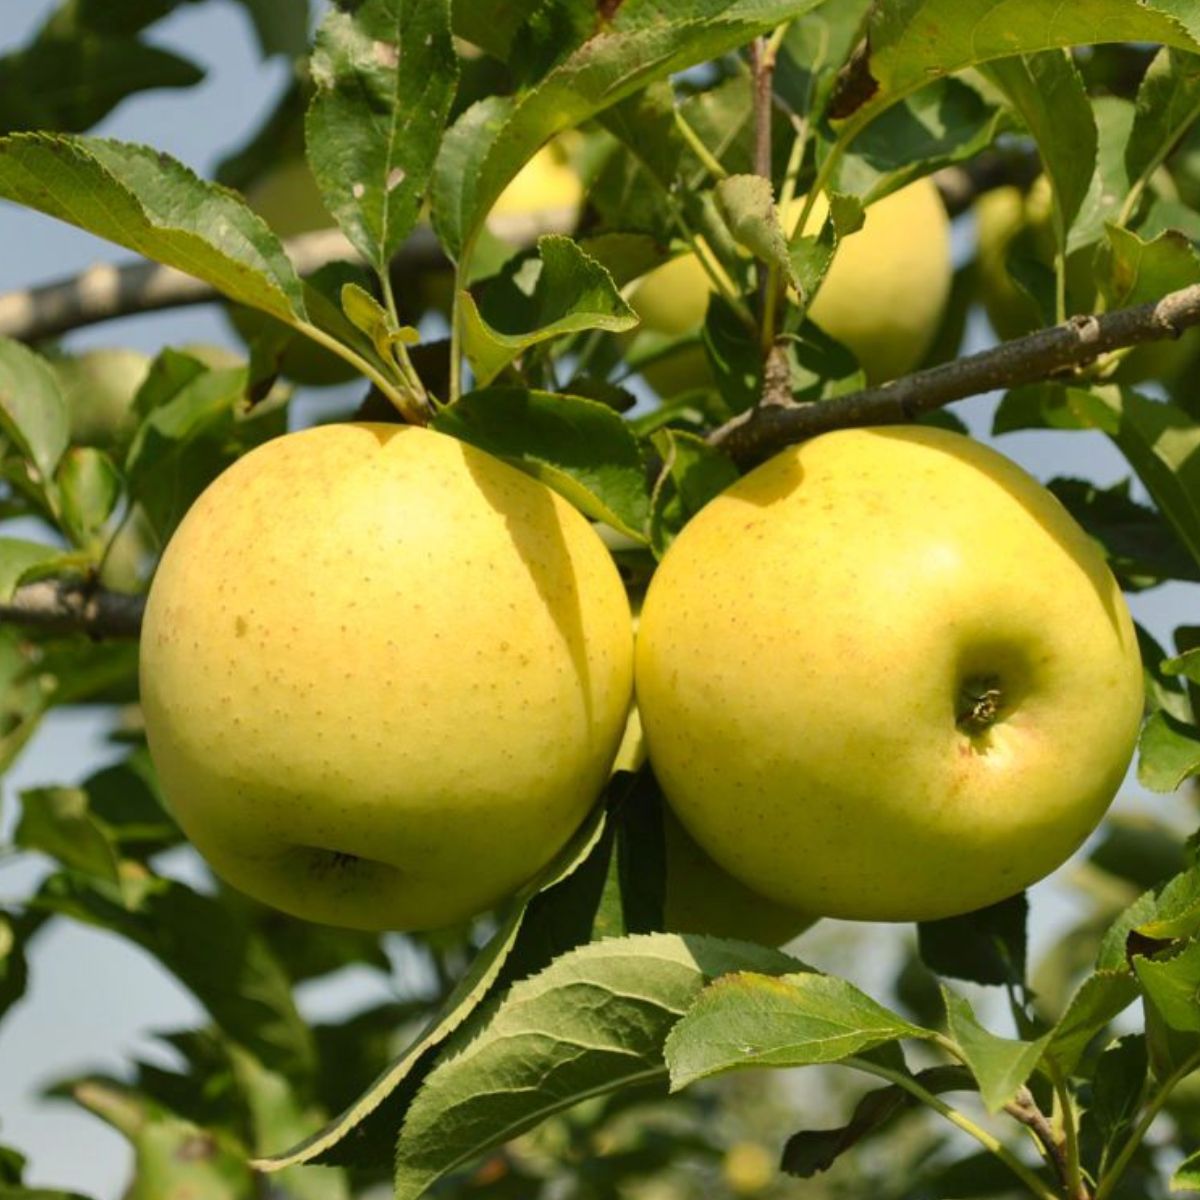 Duo Jabłoń Golden Delicious+Szara Reneta Plant Pack | Sadzonki jabłoni Drzewka owocowe DUO Drzewka owocowe | DrzewkaKarlowe.pl - drzewka karłowe, kolumnowe z dostawą do domu